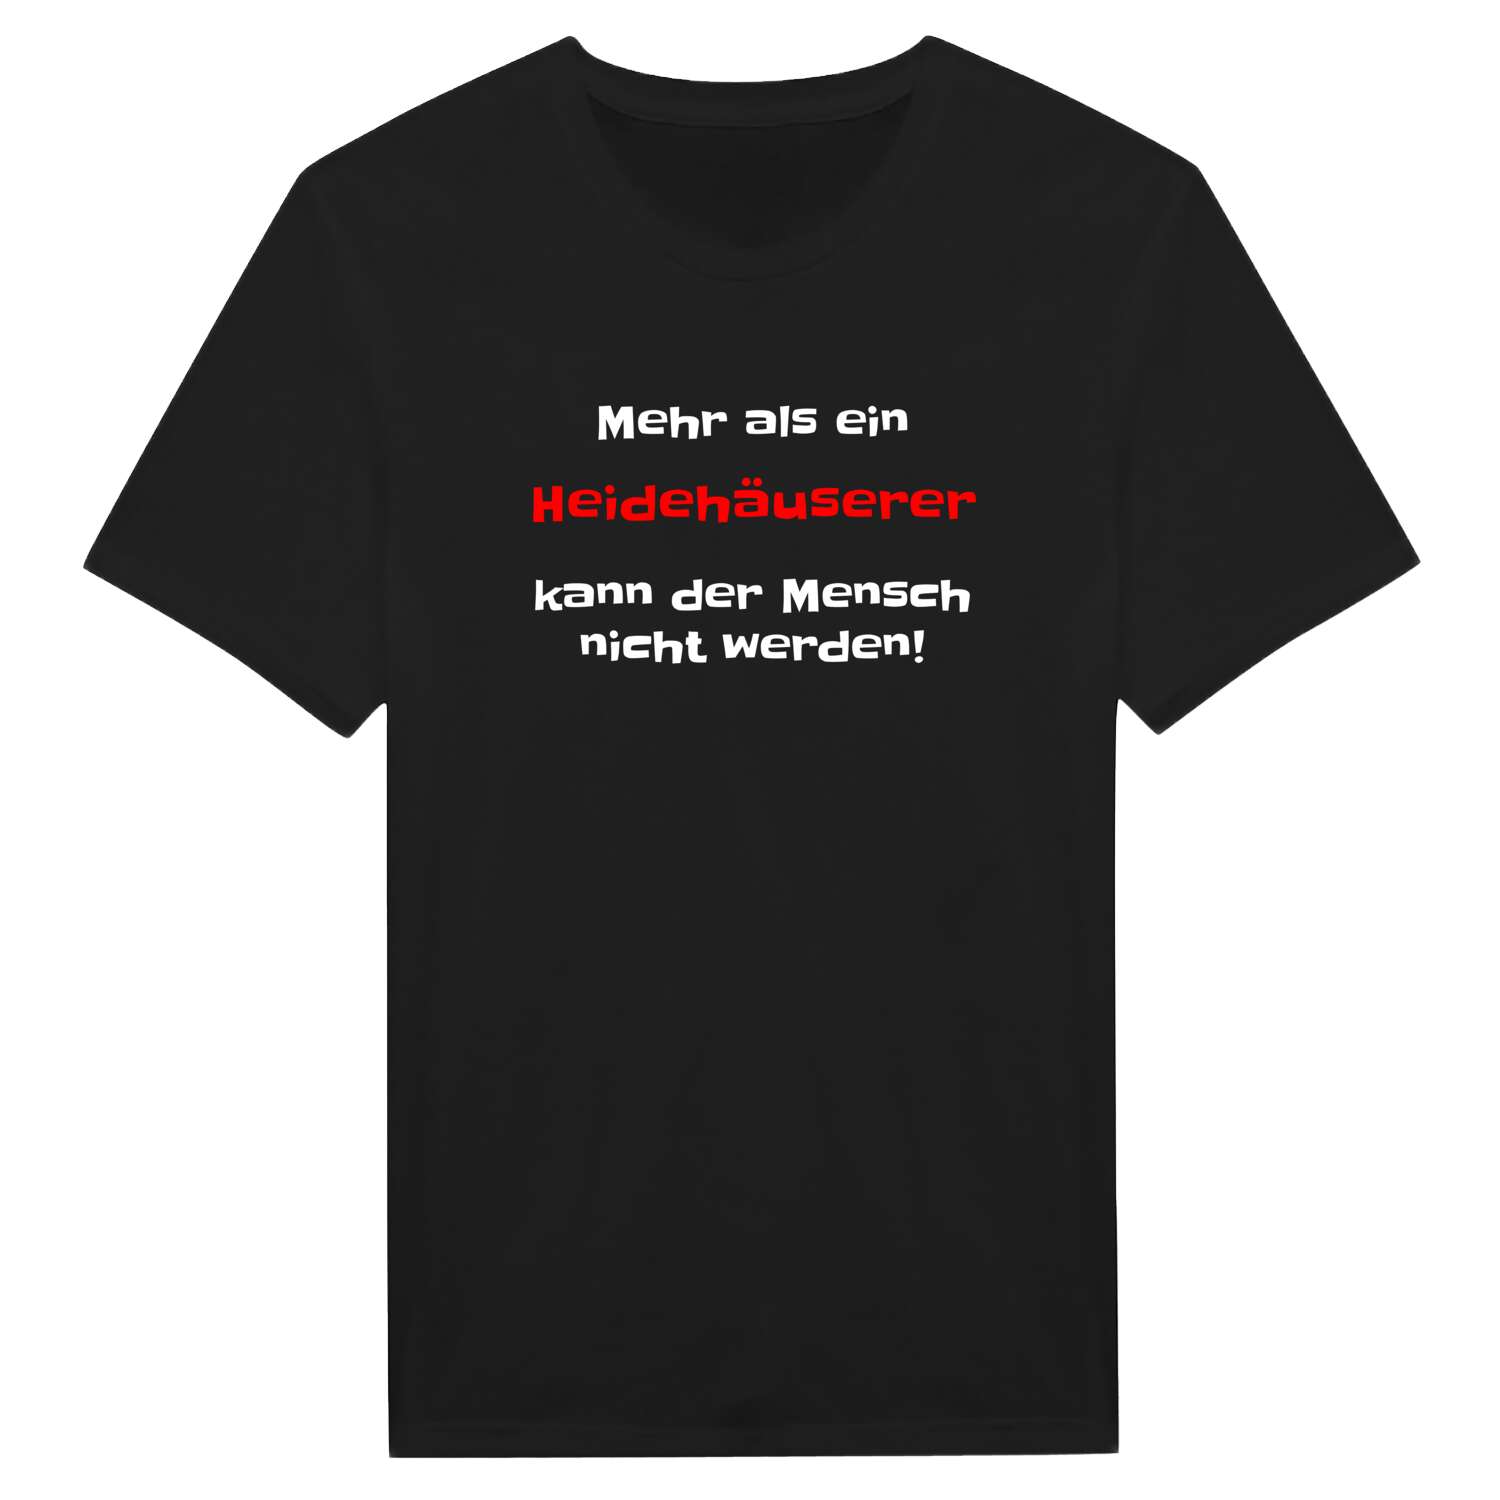 Heidehäuser T-Shirt »Mehr als ein«